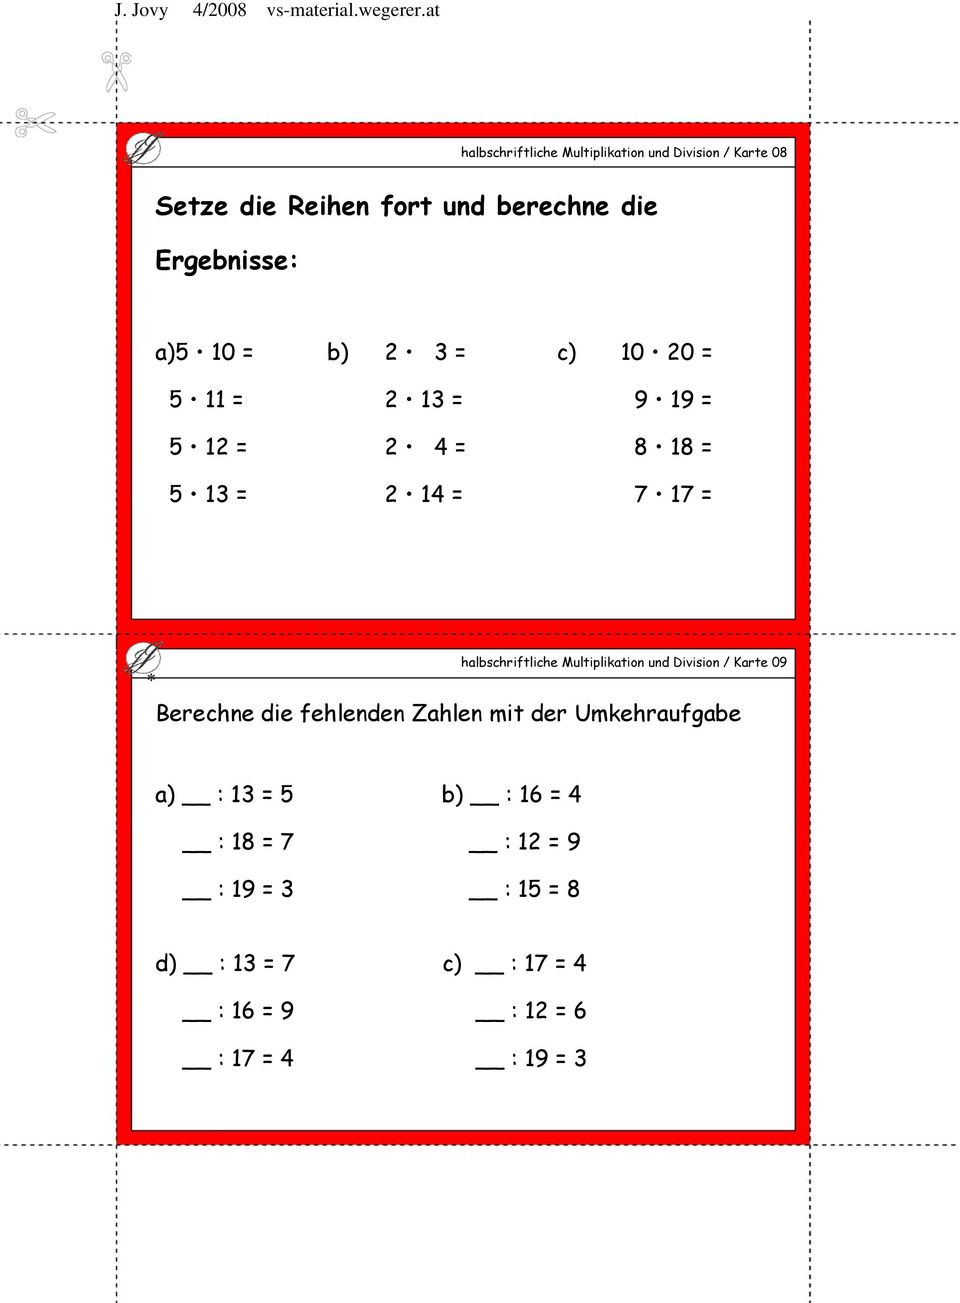 halbschriftliche Multiplikation und Division / Karte 09 Berechne die fehlenden Zahlen mit der